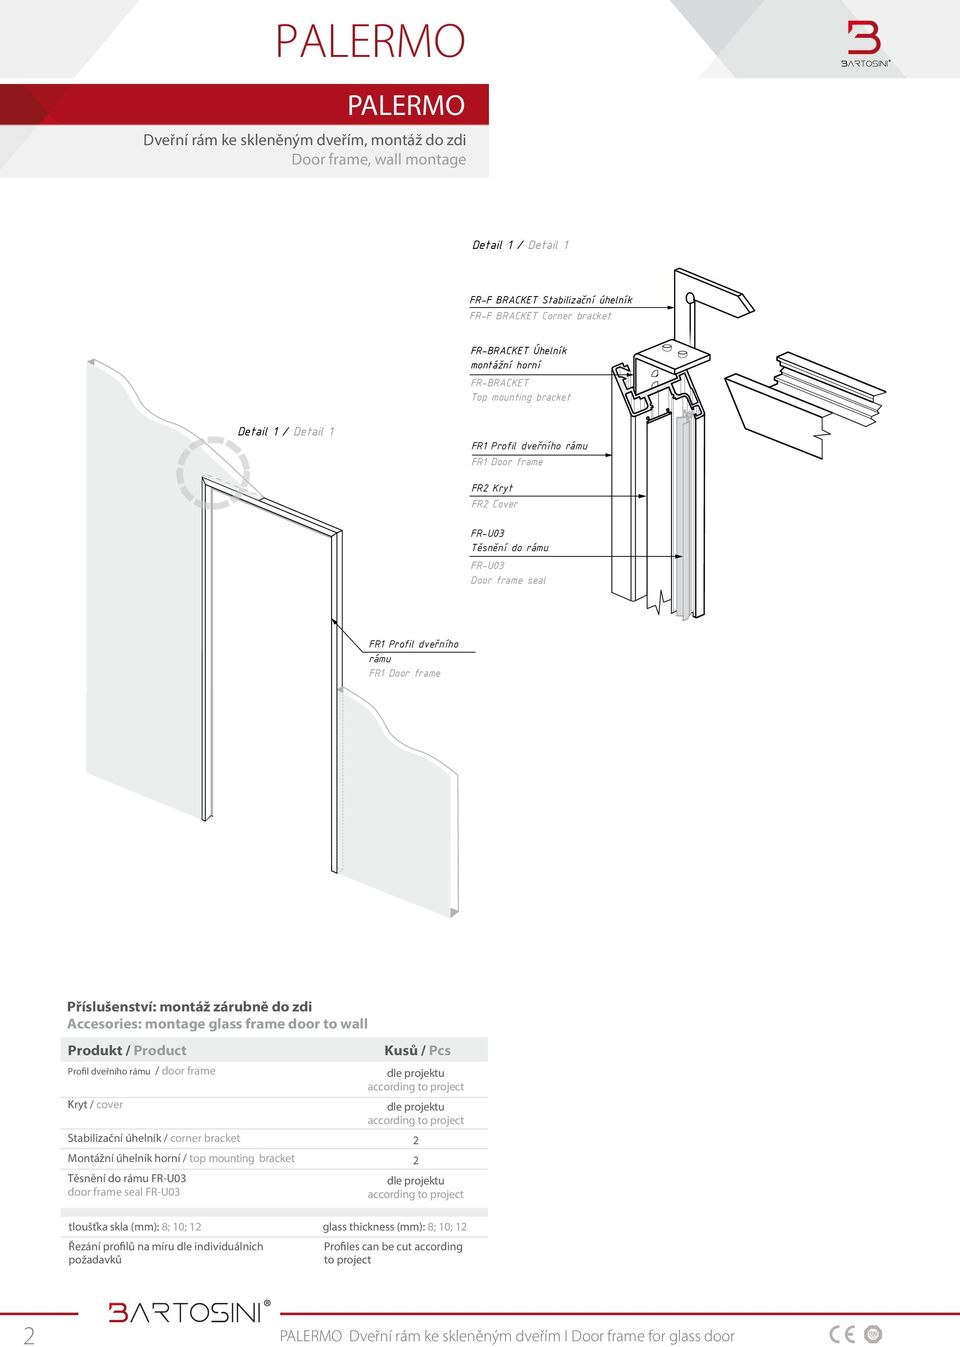 zdi Accesories: montage glass frame door to wall Produkt / Product Profil dveřního rámu / door frame Kryt / cover Stabilizační úhelník / corner bracket Montážní úhelník horní / top mounting bracket